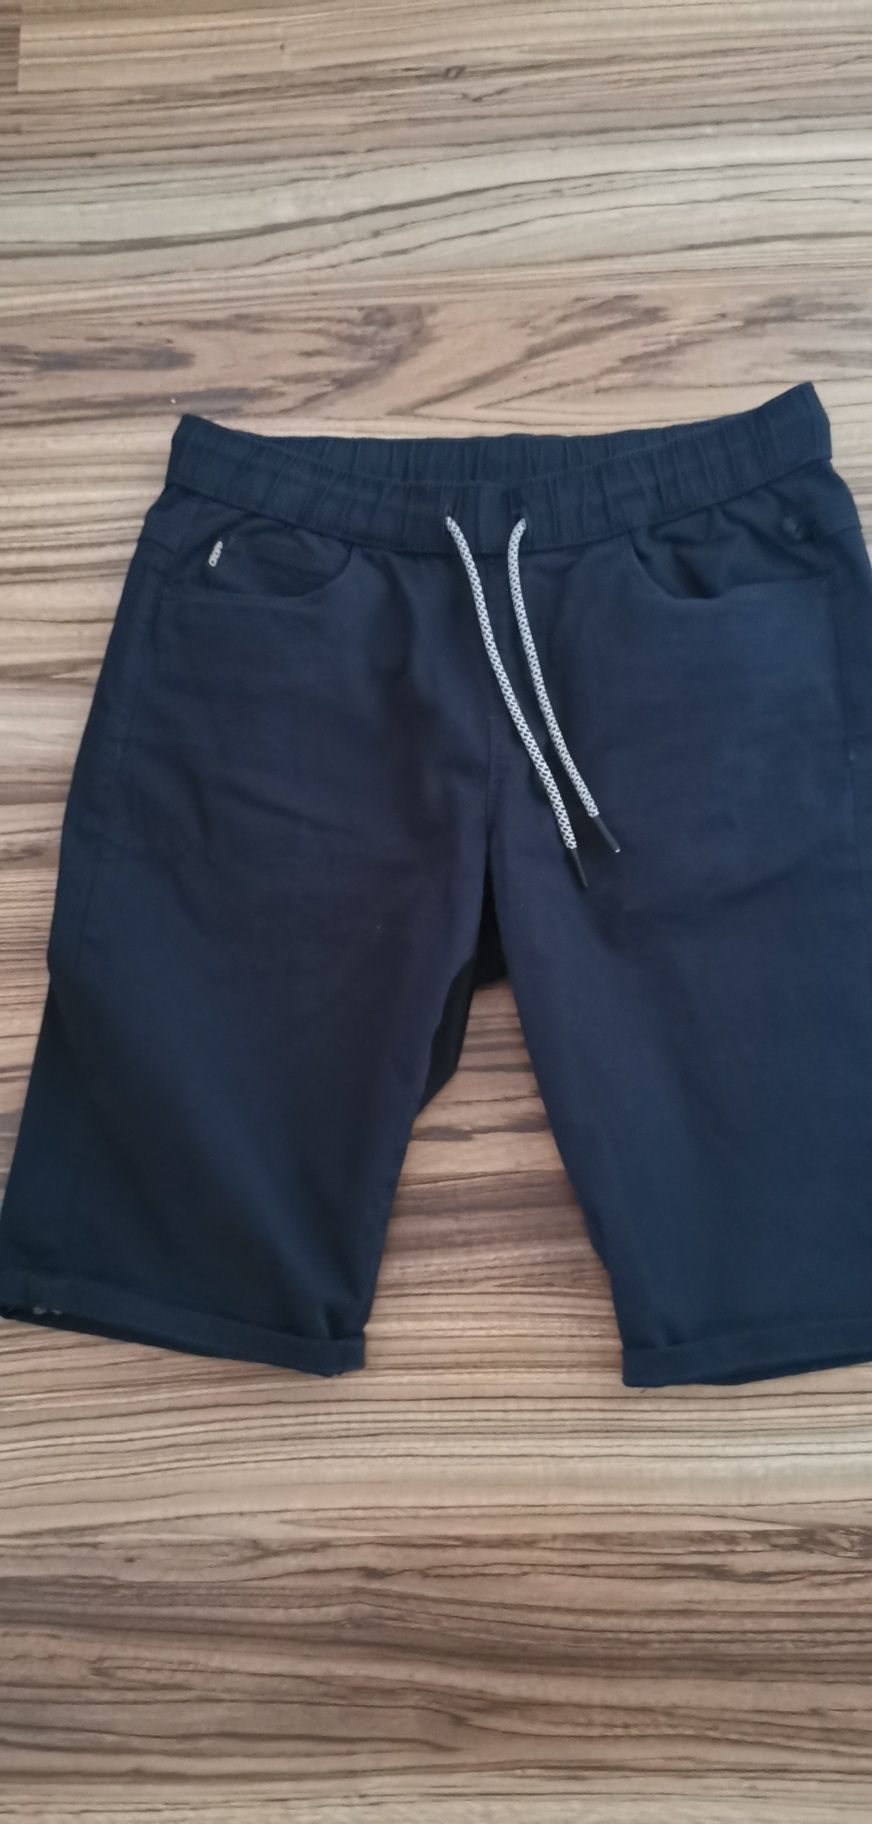 Spodnie męskie krótkie Cropp W 32 pas 42cm rozciąga się na gumce